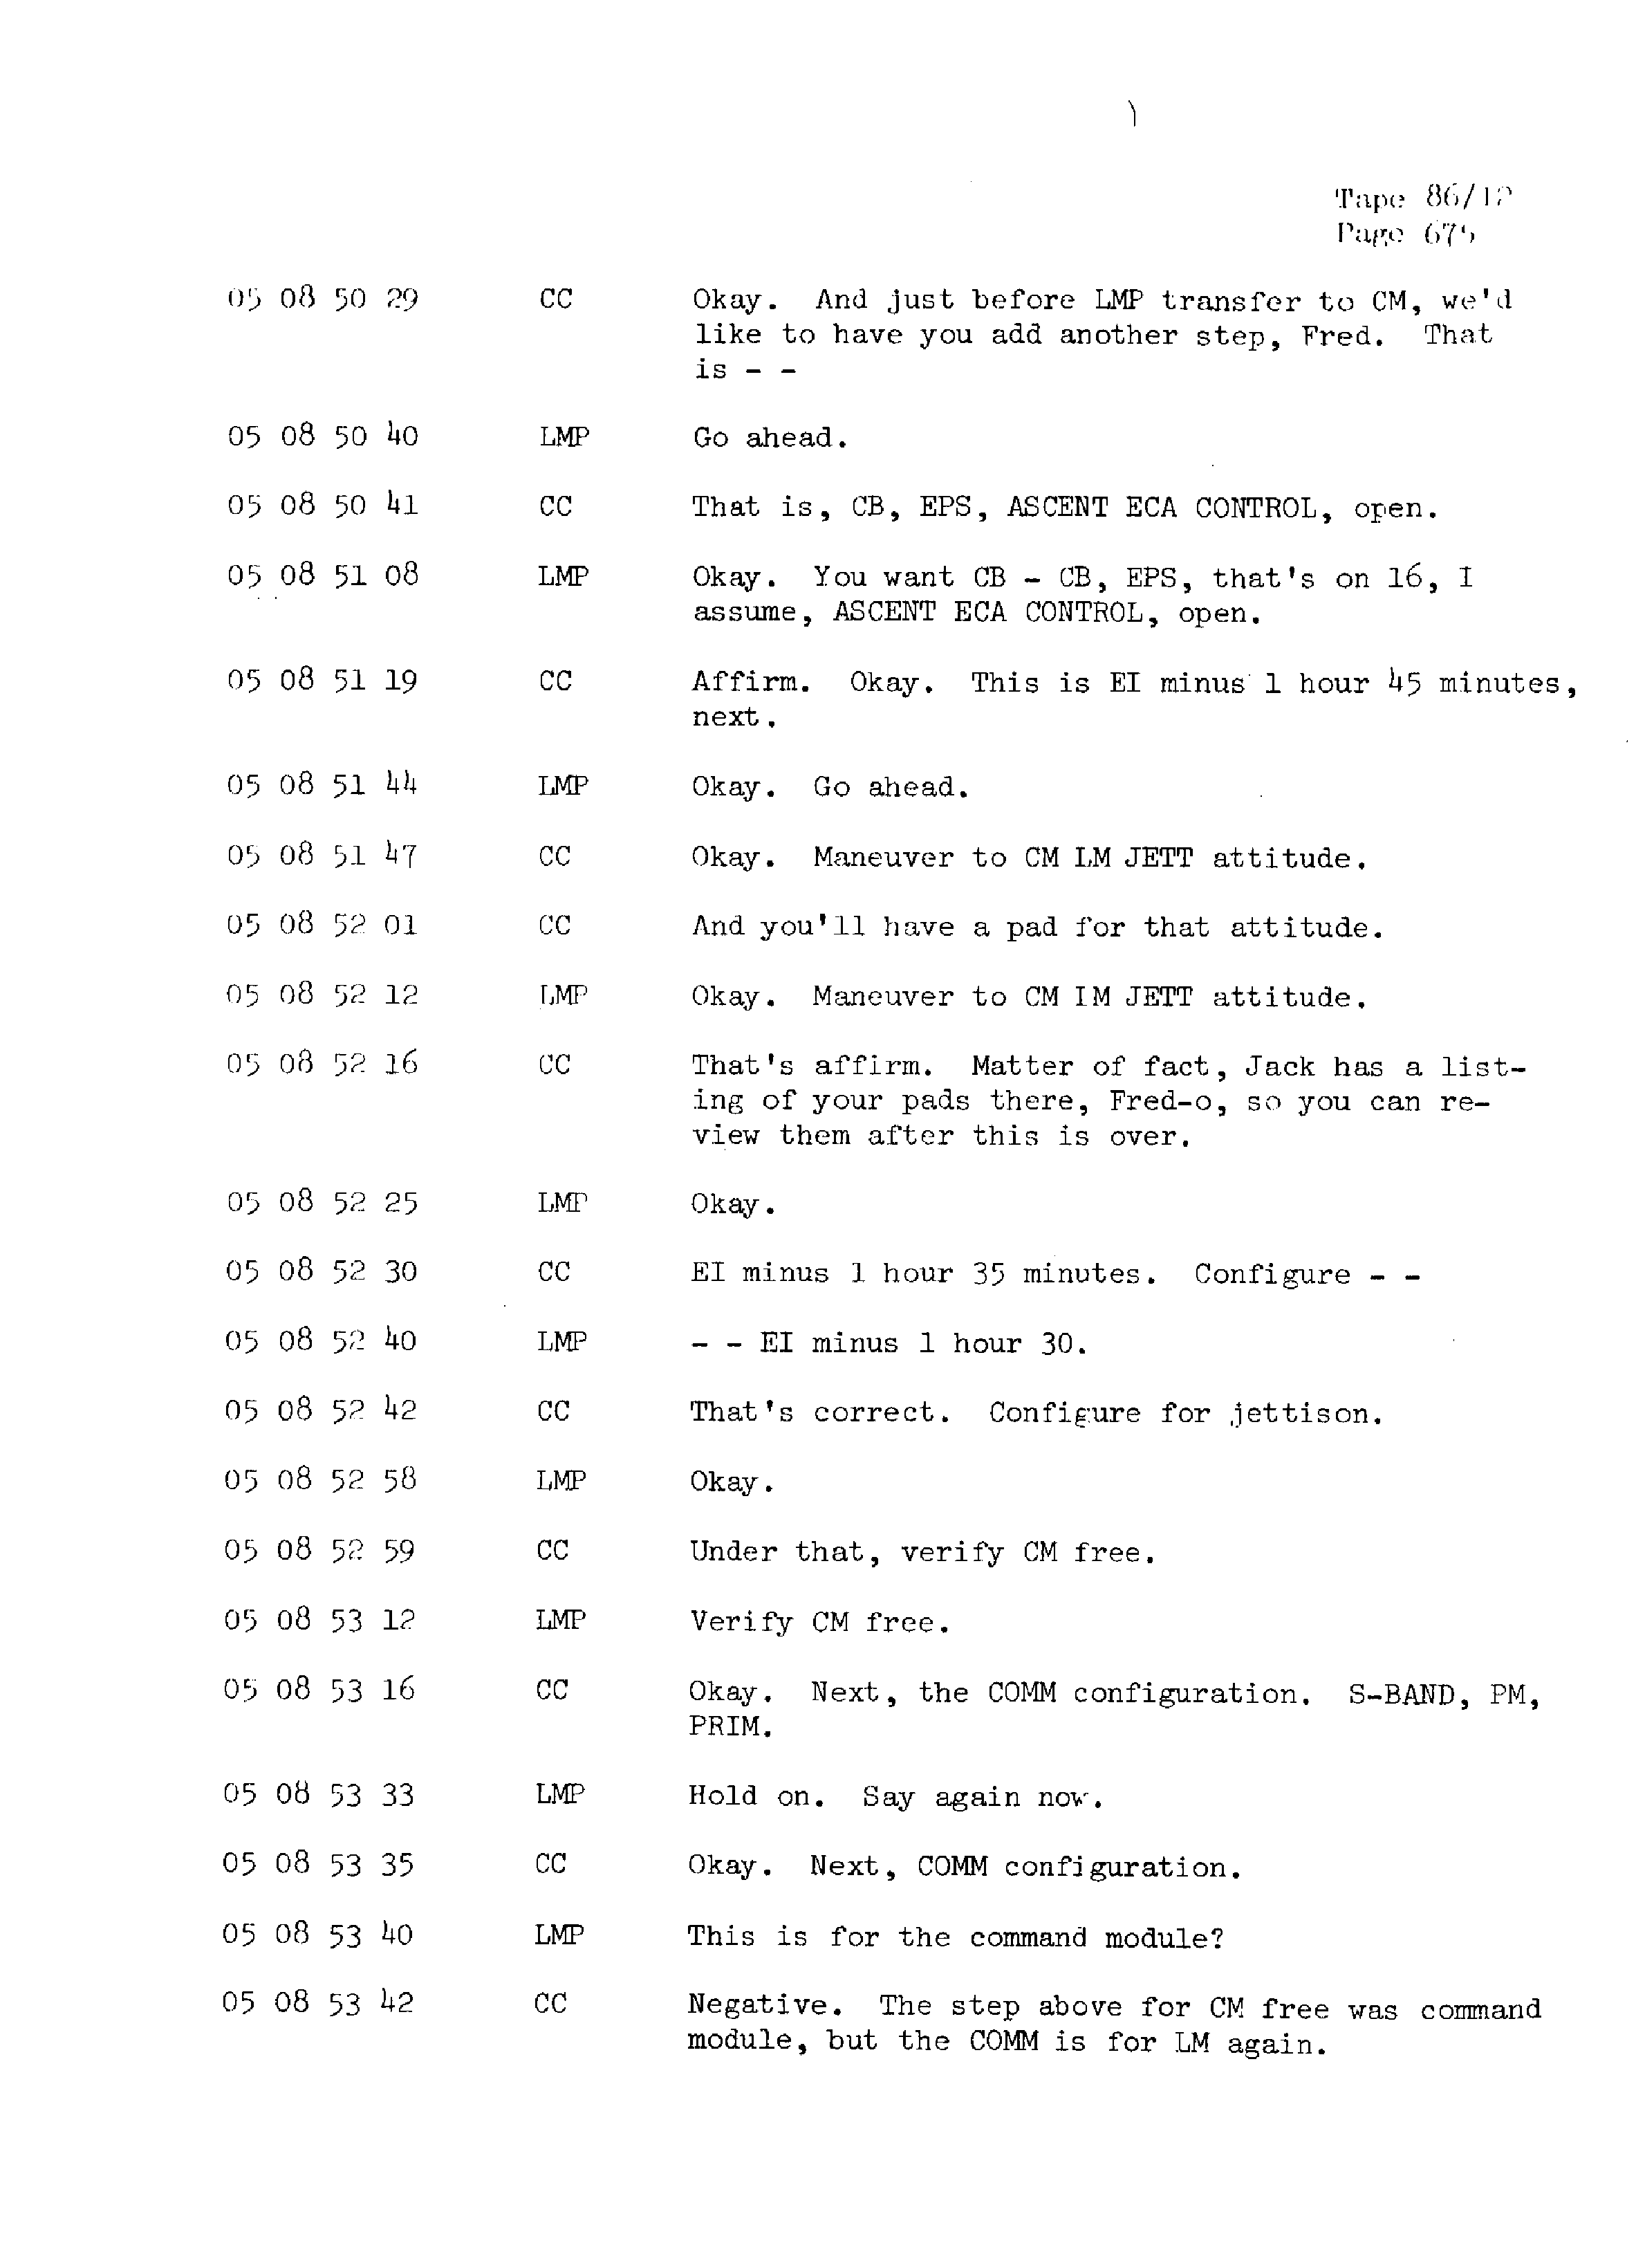 Page 682 of Apollo 13’s original transcript